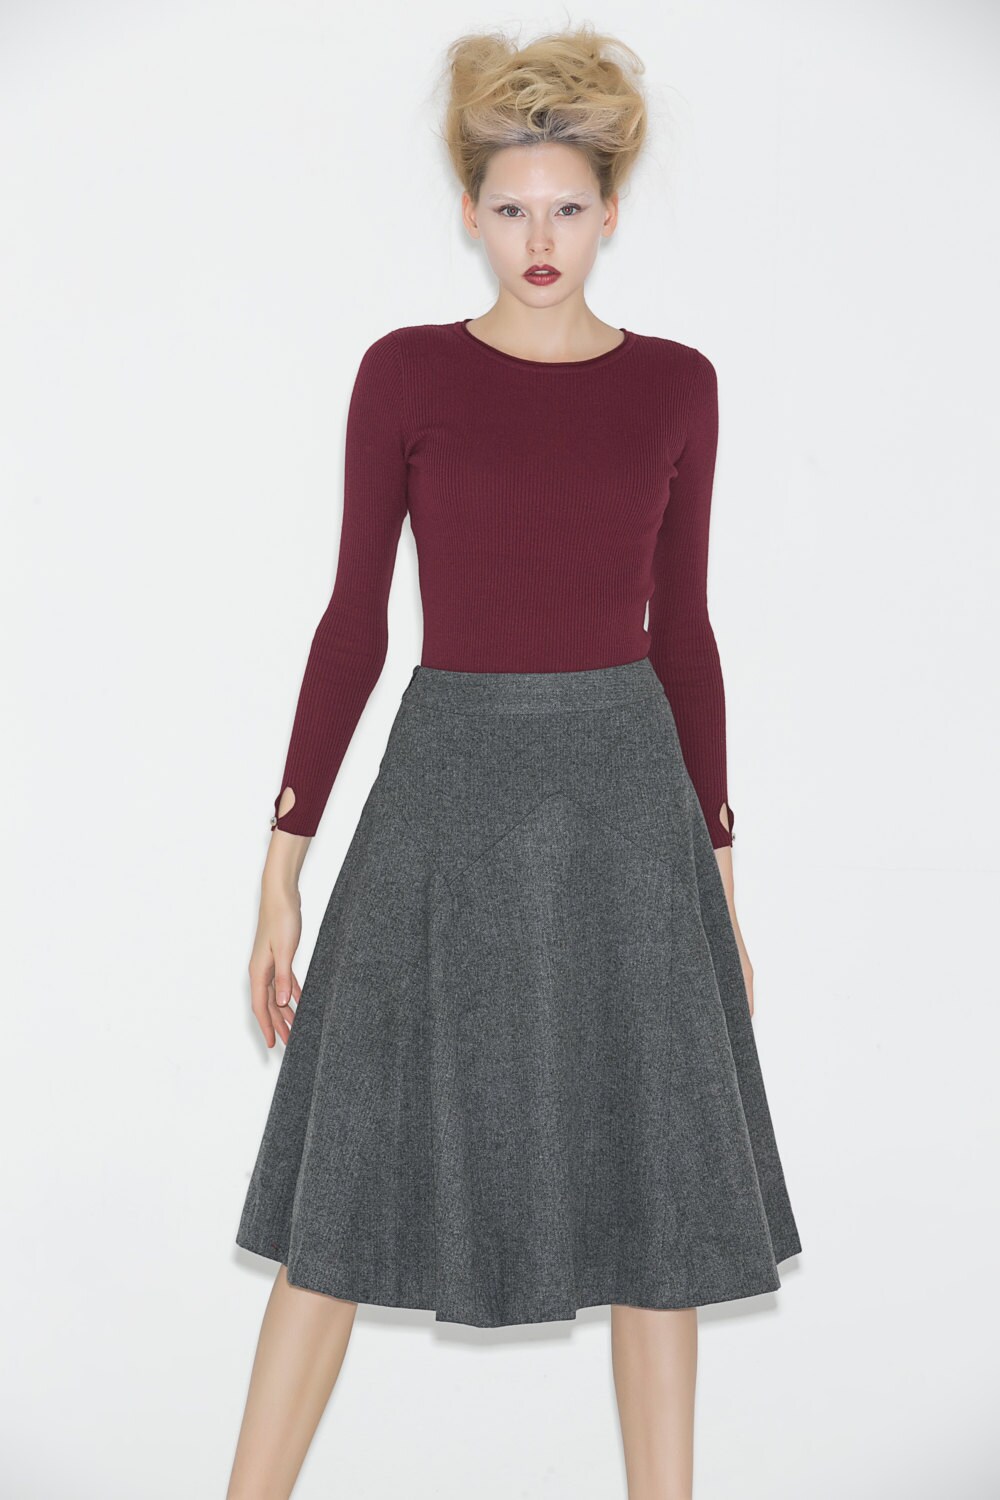 Wool skirt grey skirt gray wool skirt a line wool skirt